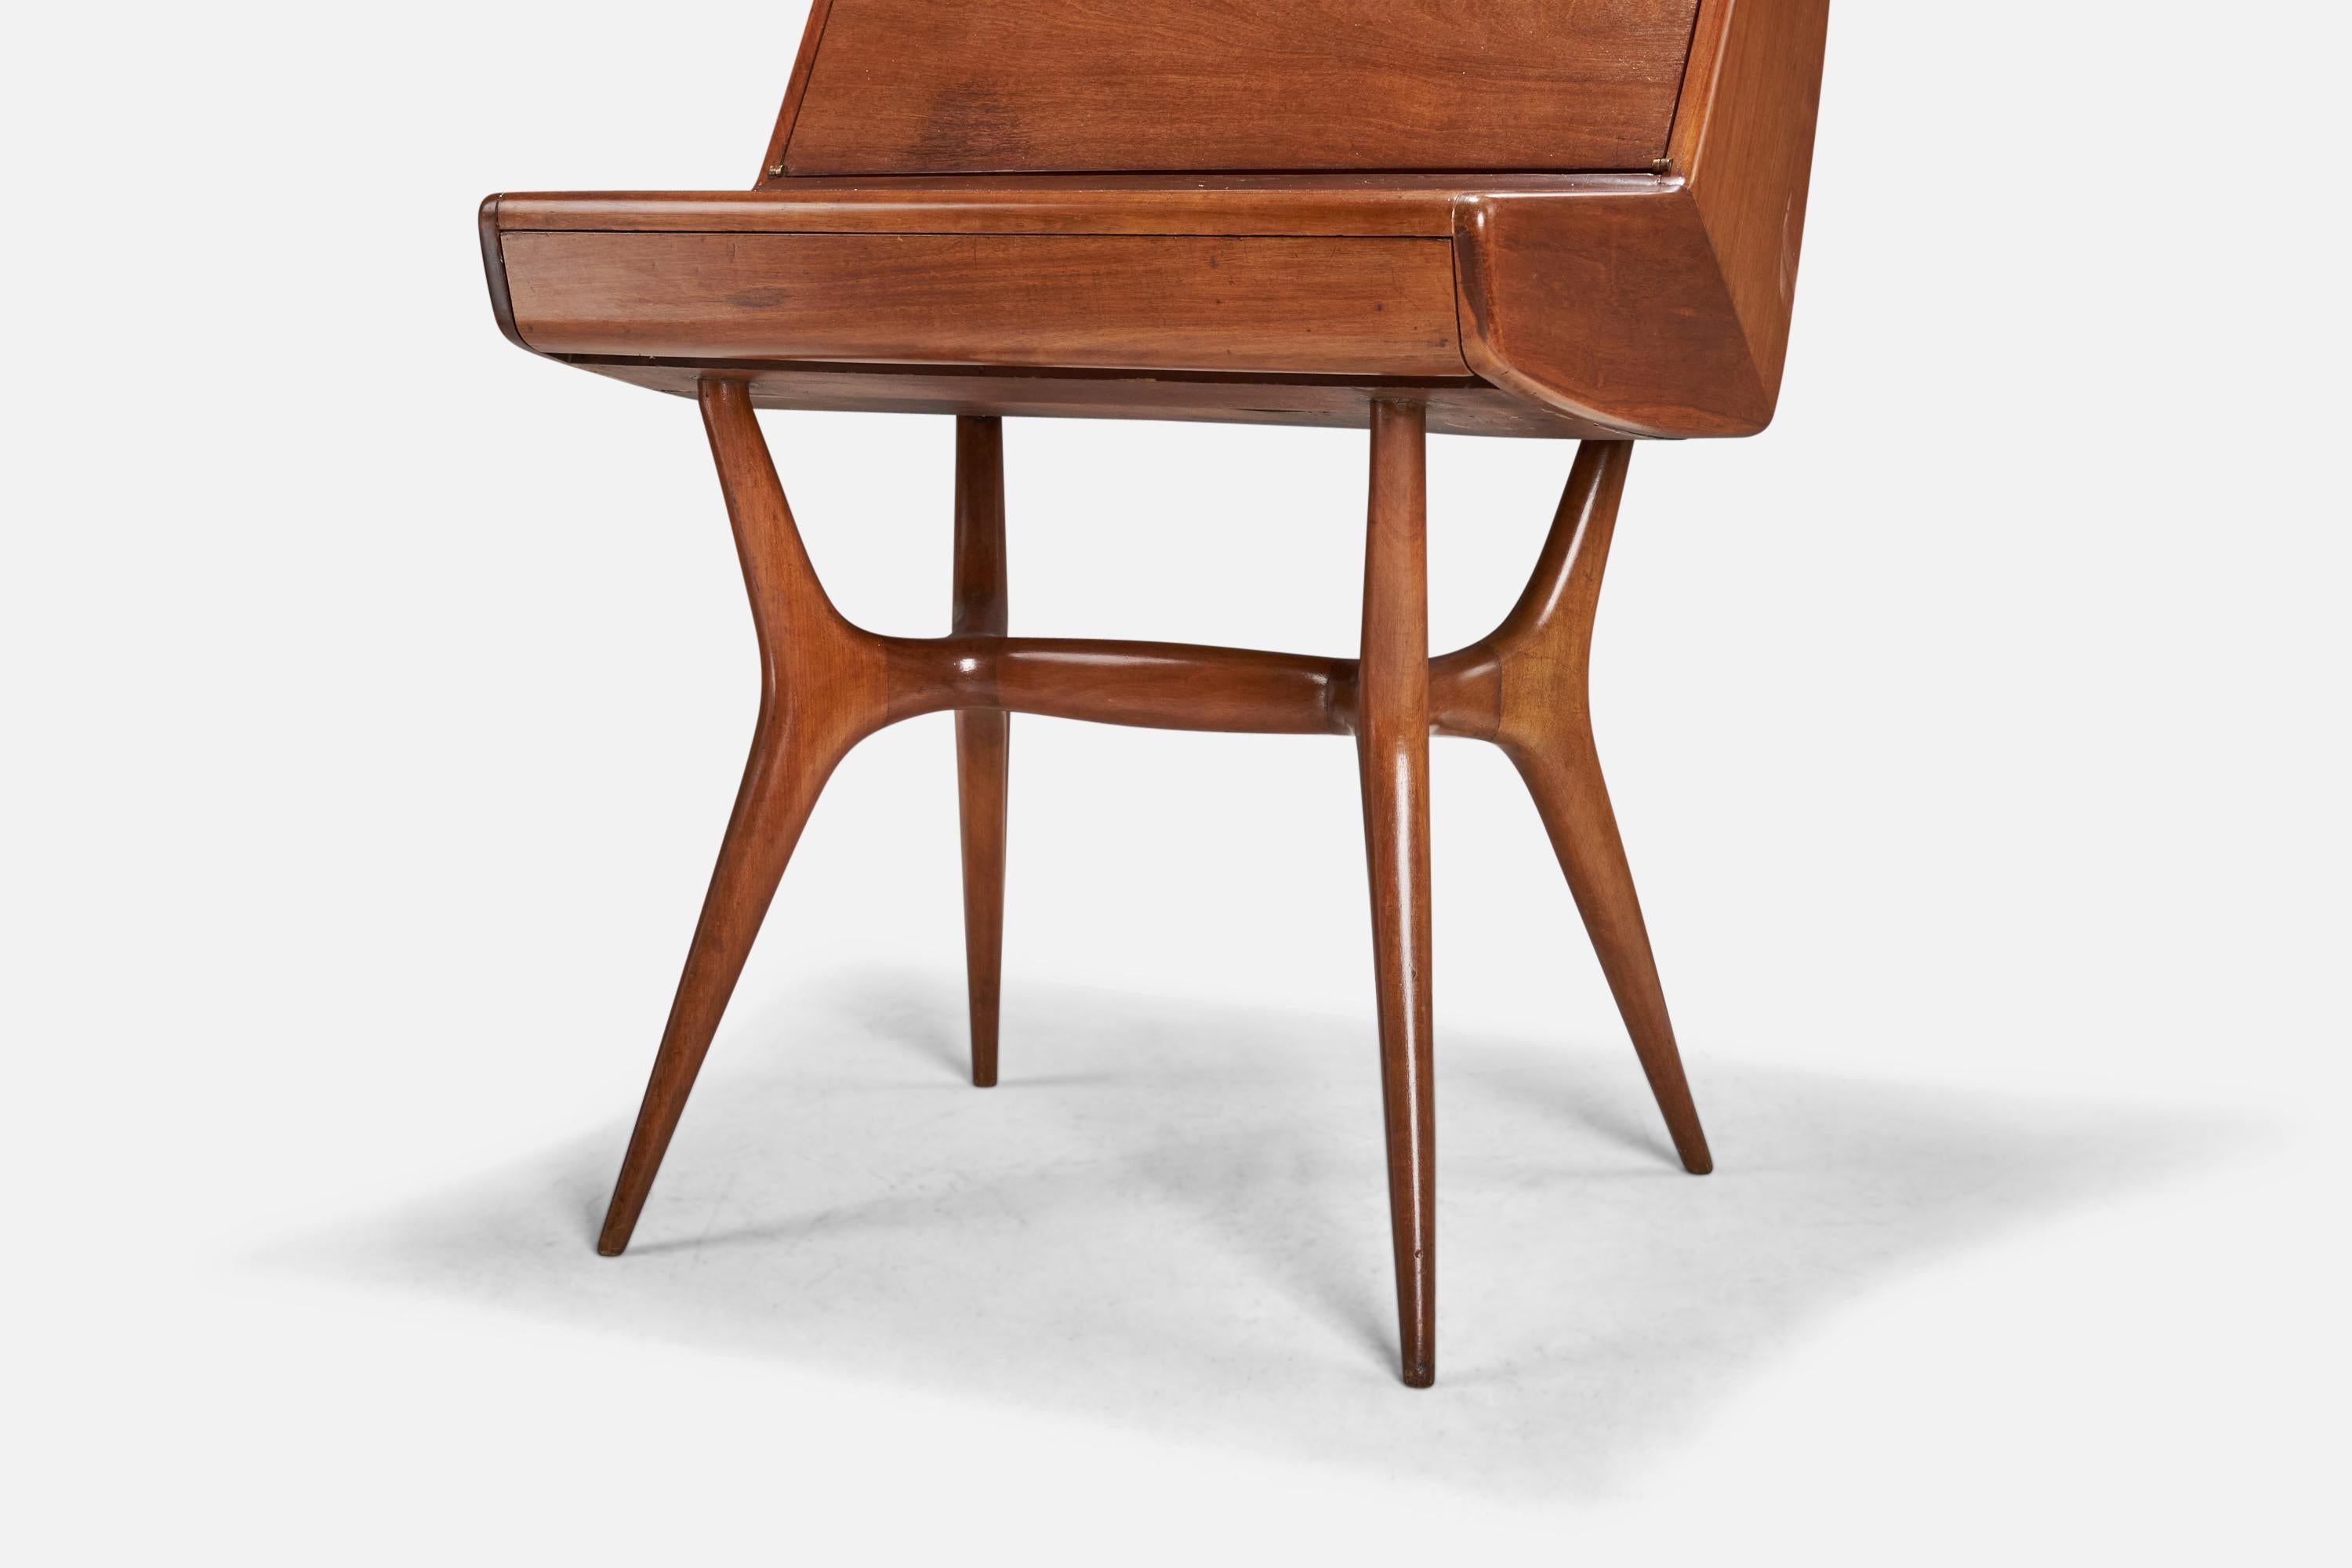 Mid-20th Century Italian Designer, Desk, Teak, Brass, Italy, 1940s For Sale